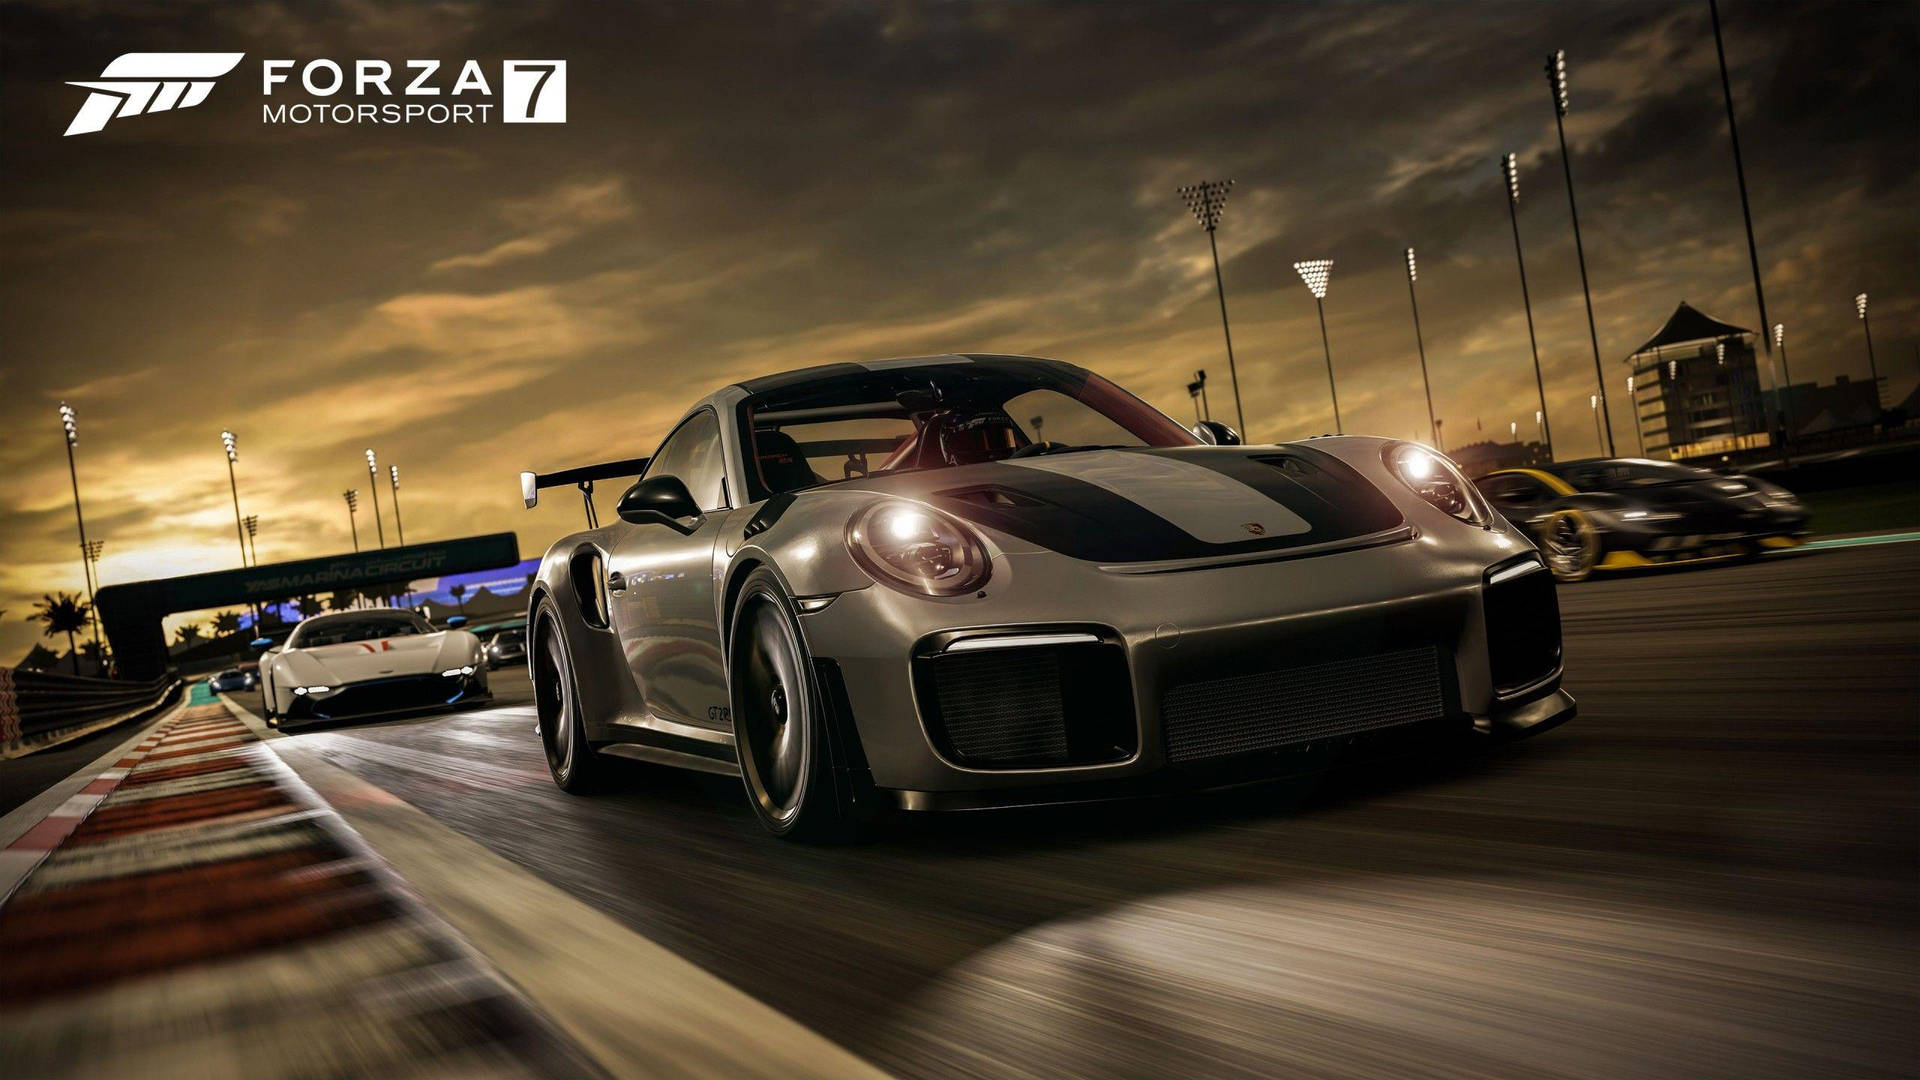 Carrerasde Coches Porsche En Forza 7 Fondo de pantalla